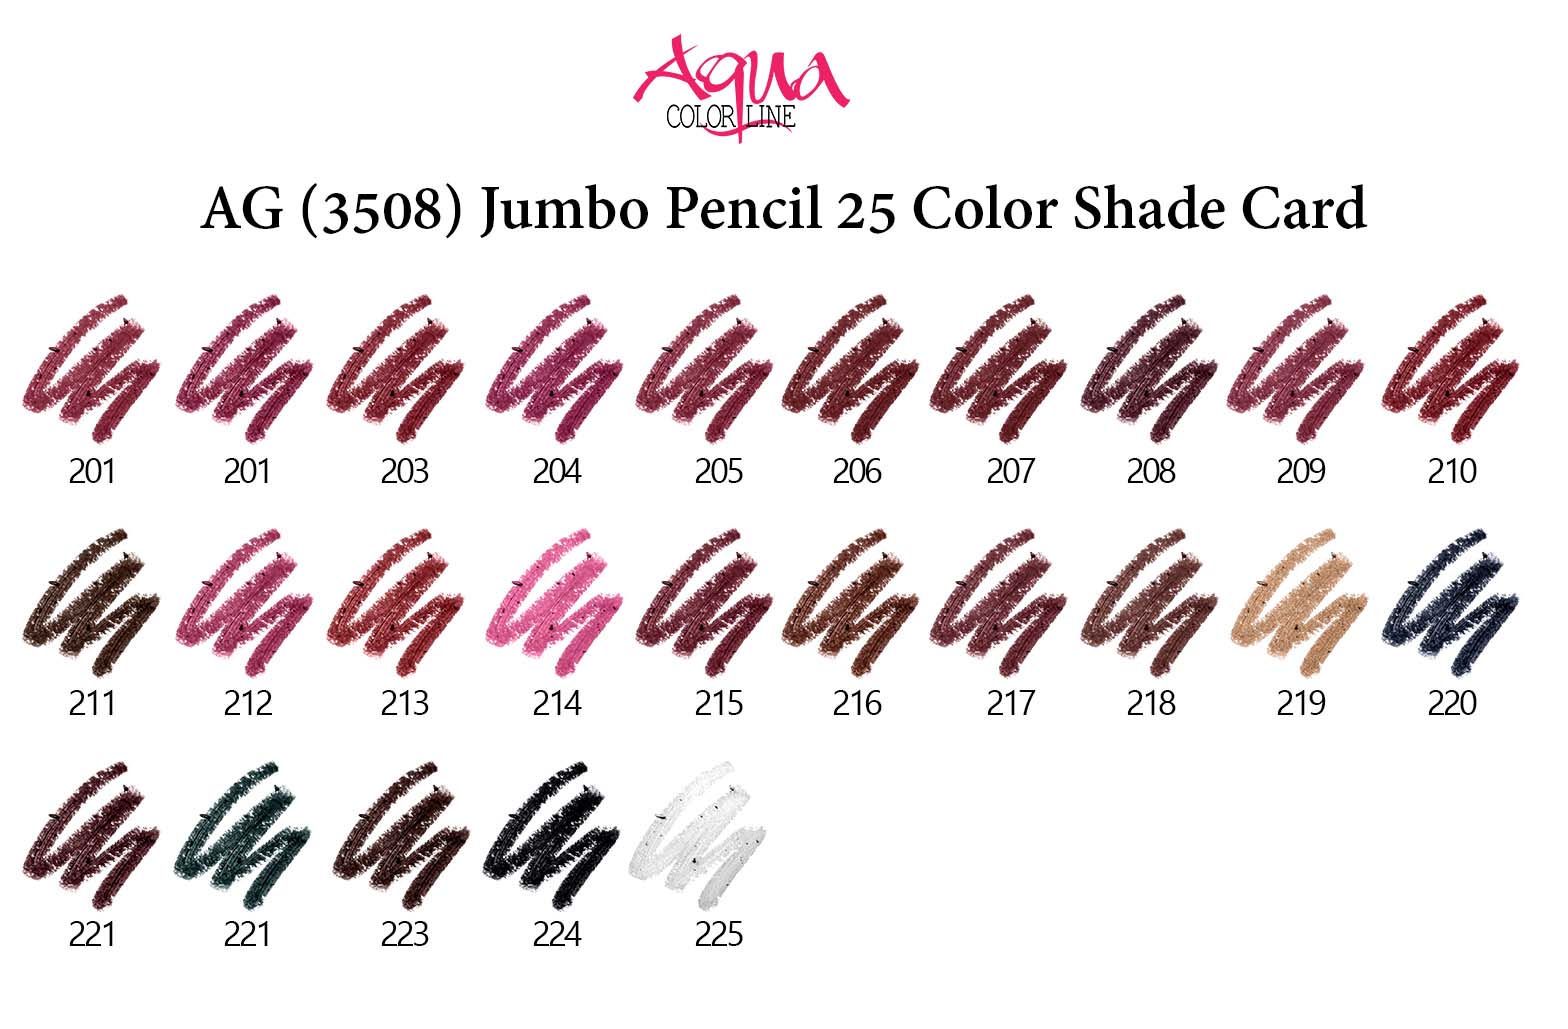 Aqua Color Line Jumbo Lipstick Pencil